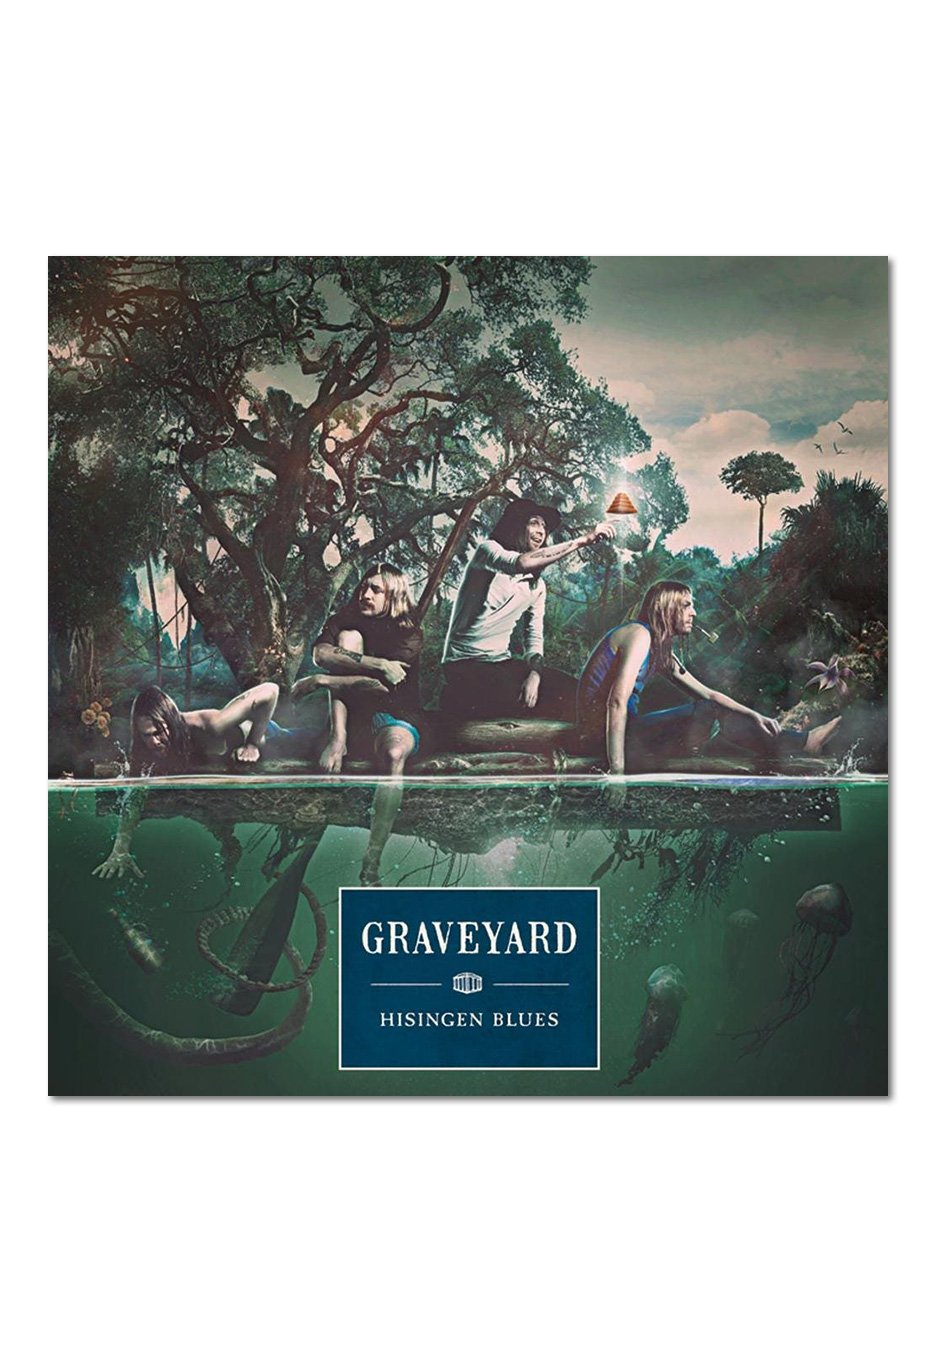 Graveyard - Hisingen Blues - Digipak CD